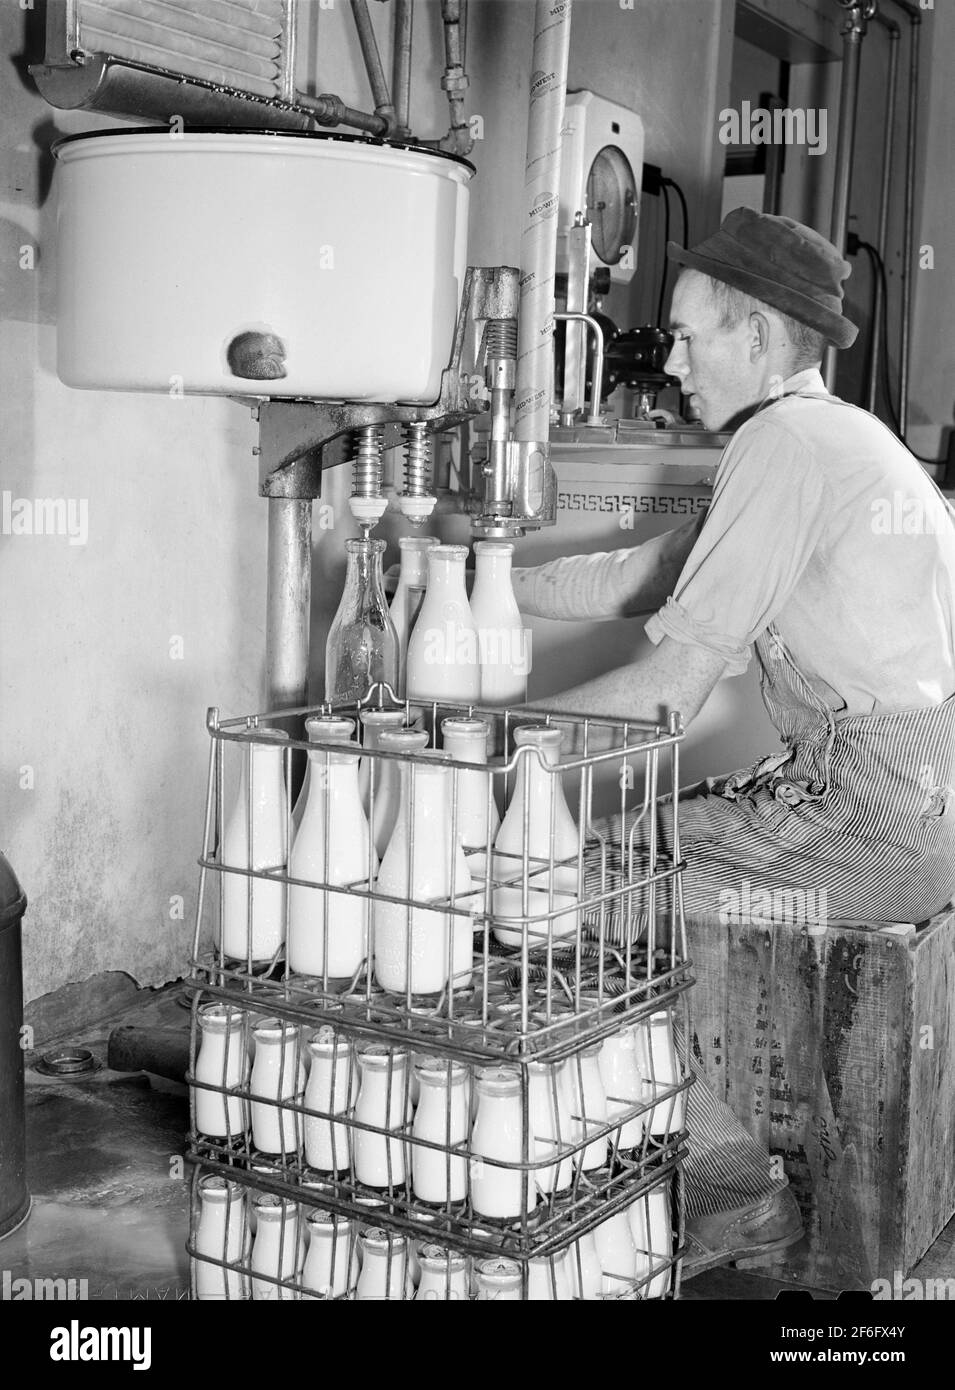 Producteur laitier, une administration de la sécurité agricole (FSA) locataire achat emprunteur, embouteillage de lait à l'usine de pasteurisation, comté de Caswell, Caroline du Nord, États-Unis, Marion Post Wolcott, Administration américaine de la sécurité agricole, octobre 1940 Banque D'Images